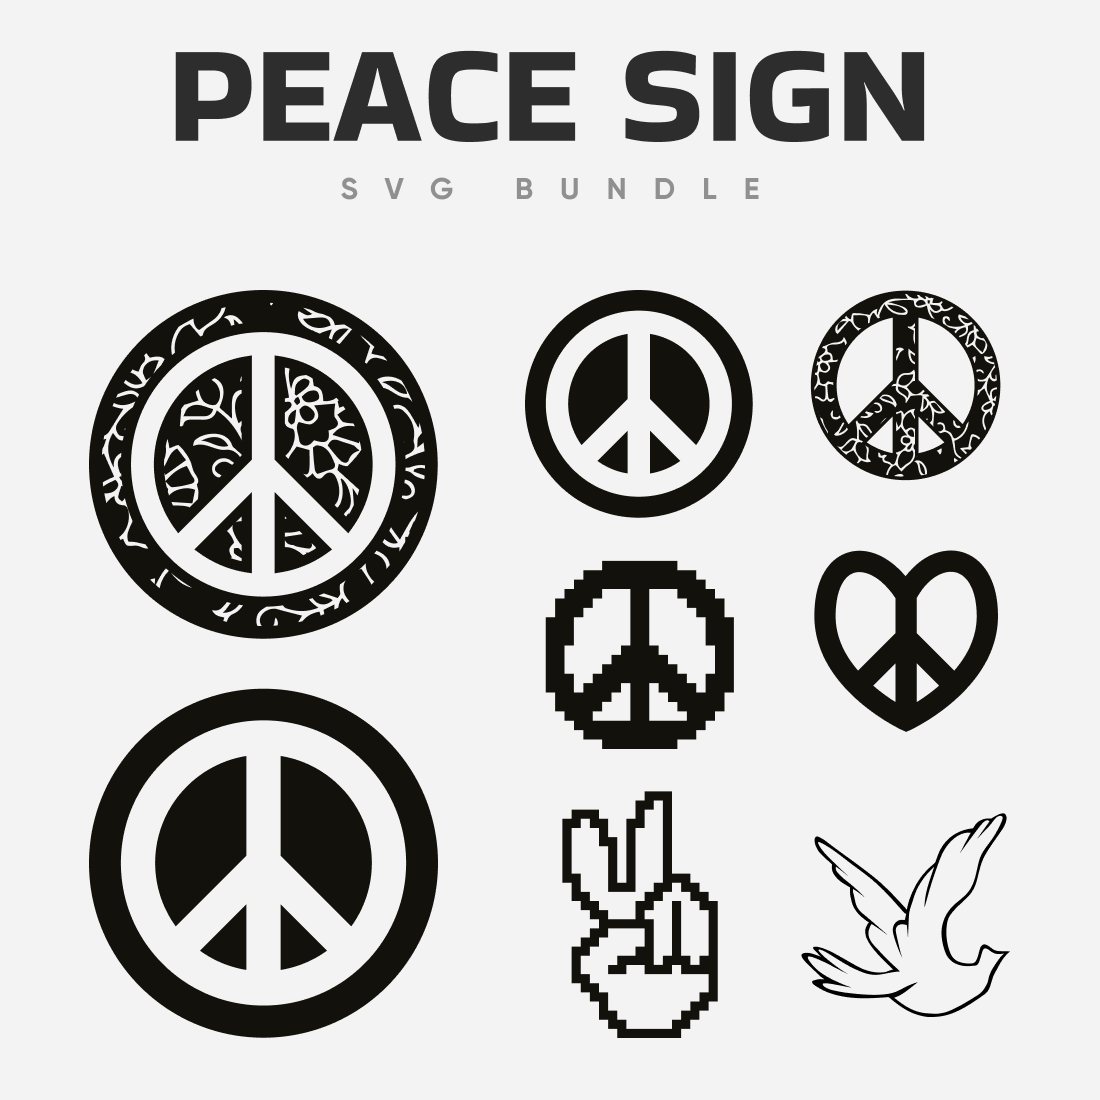 Peace sign logos SVG bundle.